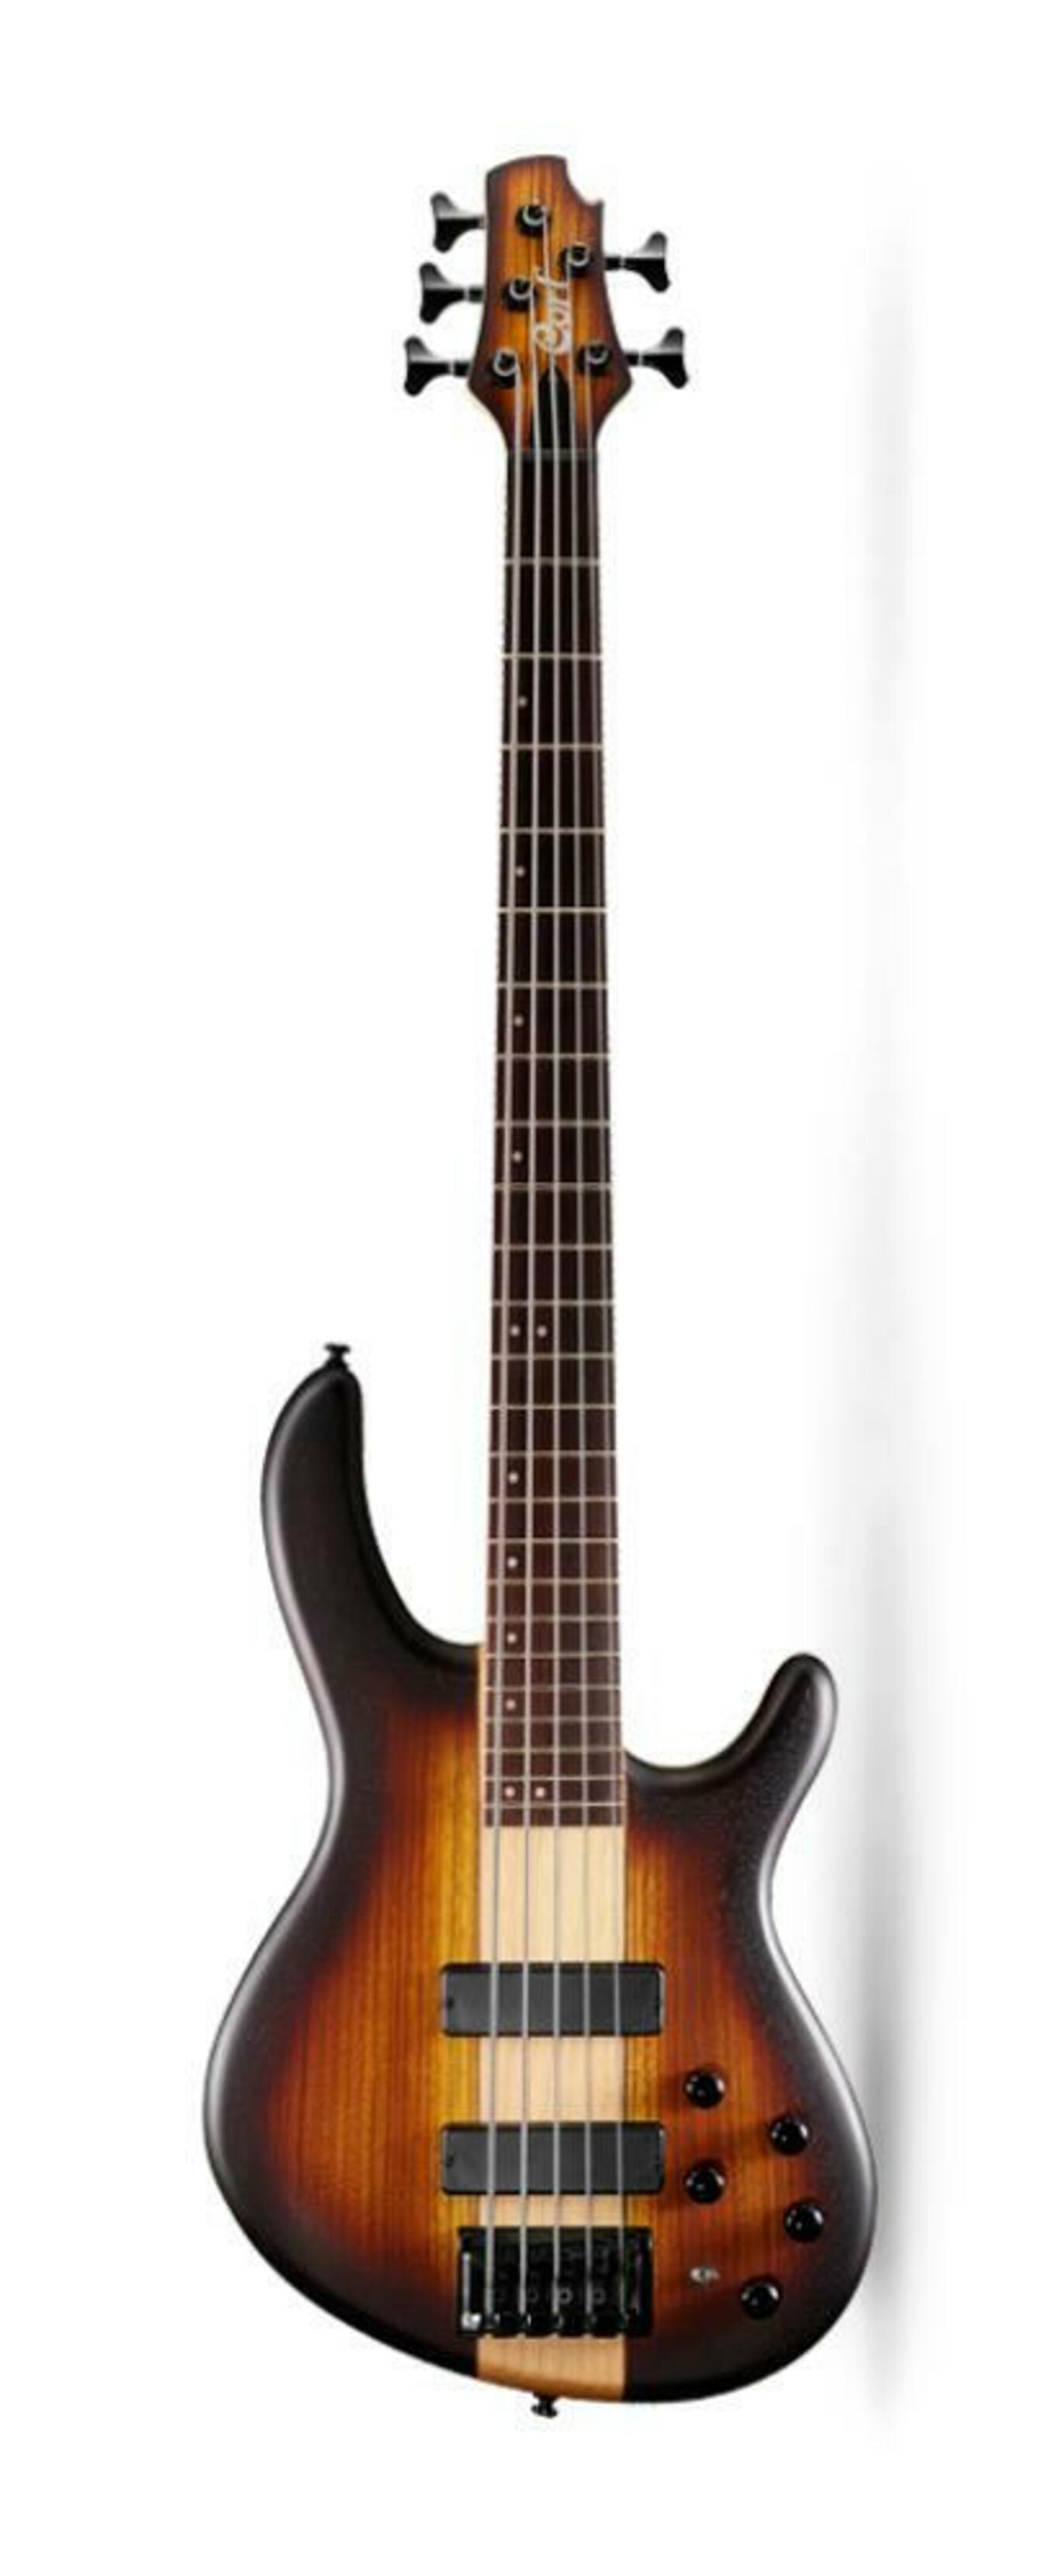 Бас-гитары Cort C5-Plus-ZBMH-OTAB ft03 незавершенный корпус гитары из красного дерева пустой гитарный ствол для электрогитар diy запчасти